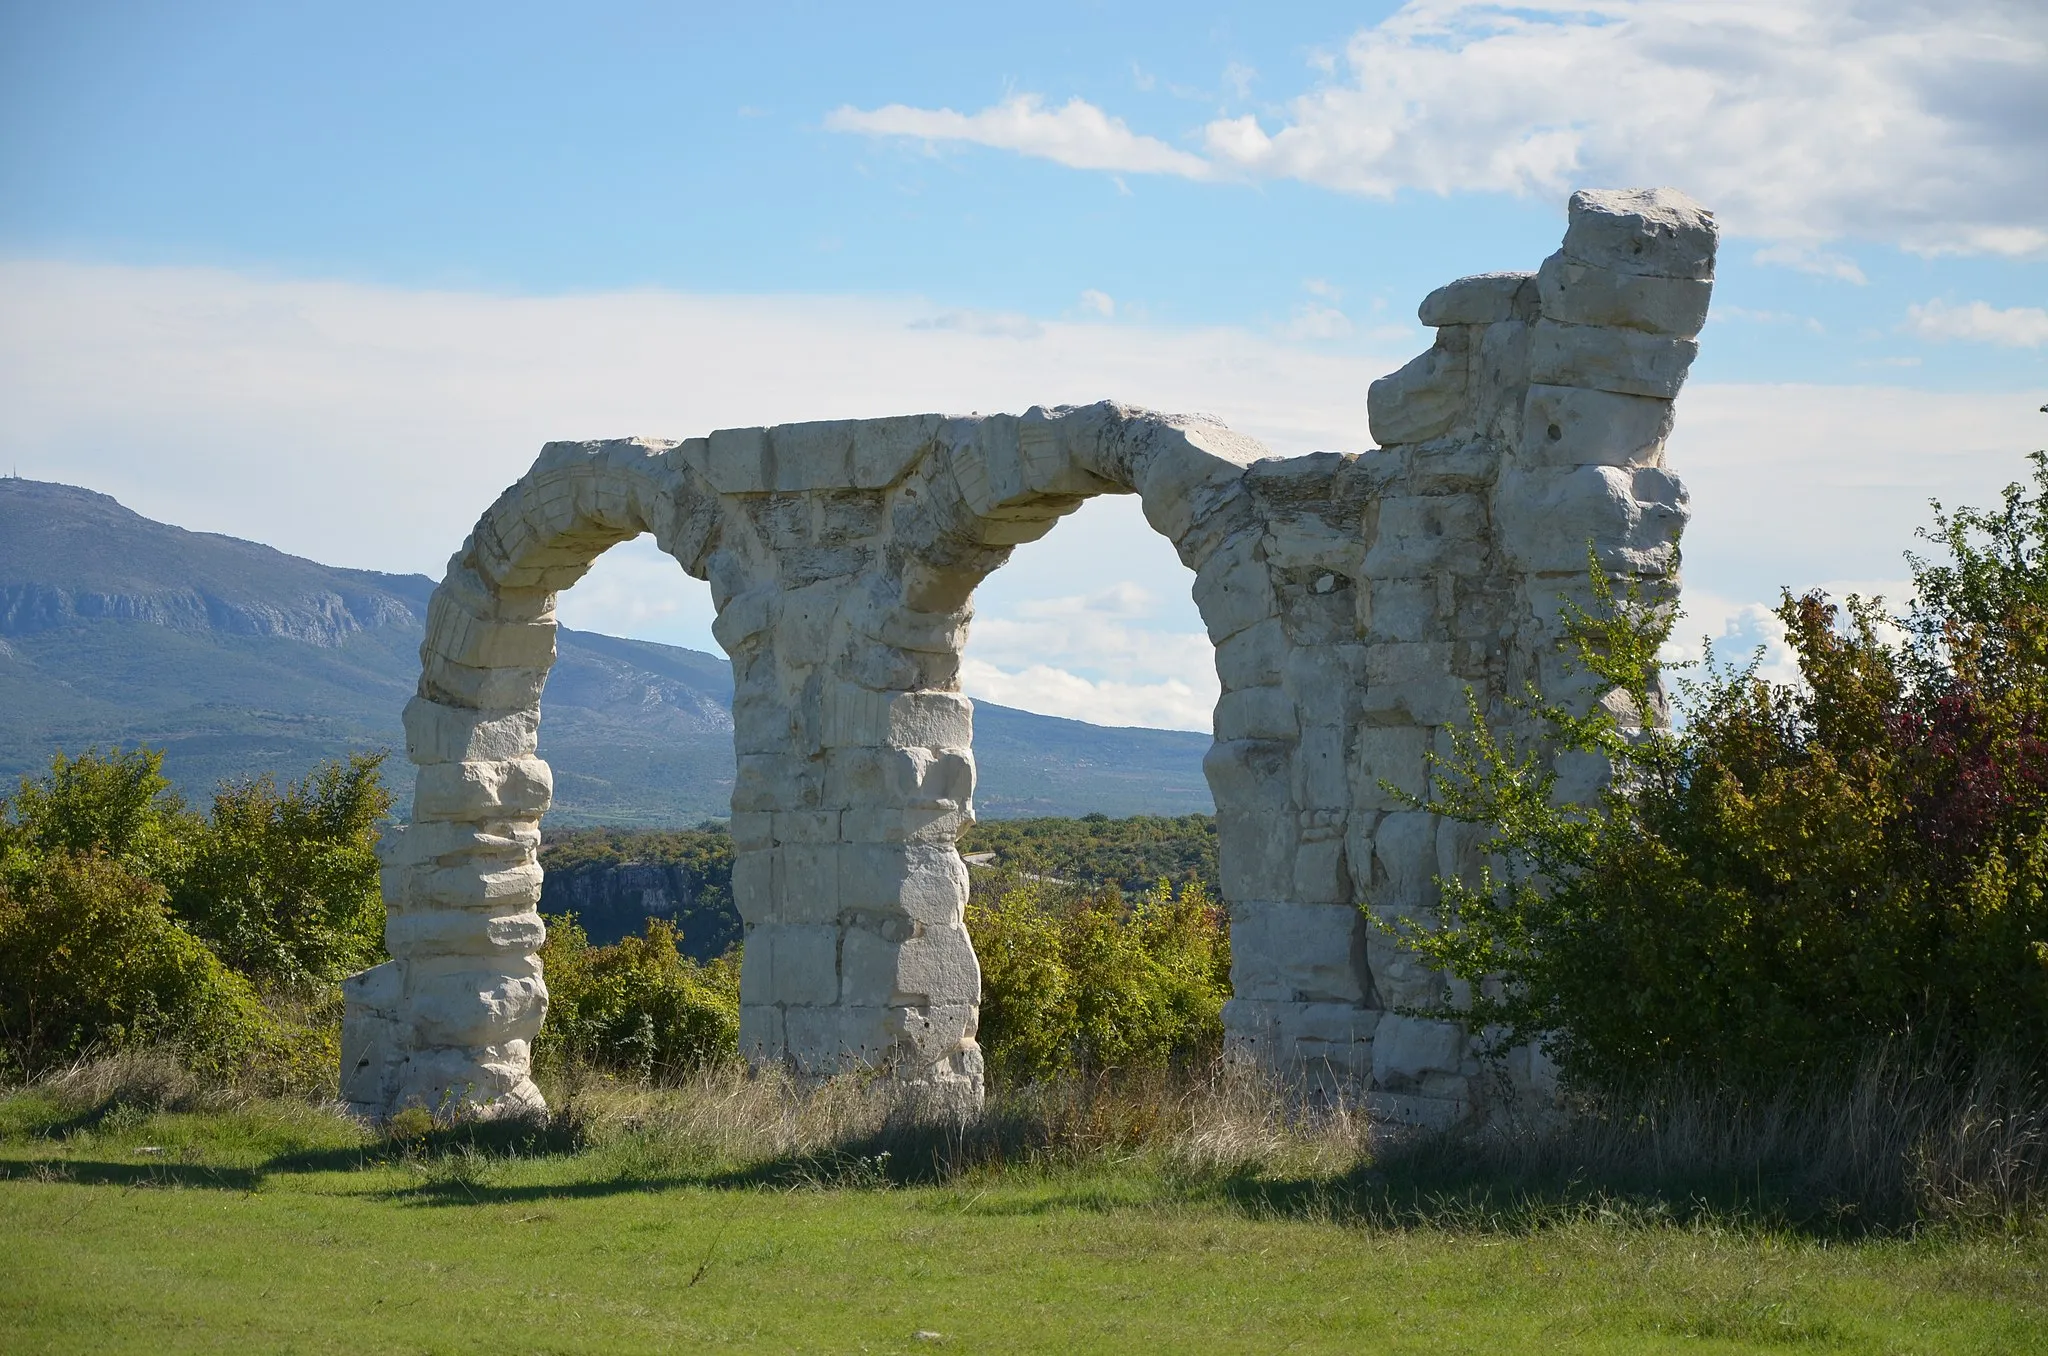 Photo showing: Arches of the Burnum principium (or Forum), Burnum legionary camp, Dalmatia